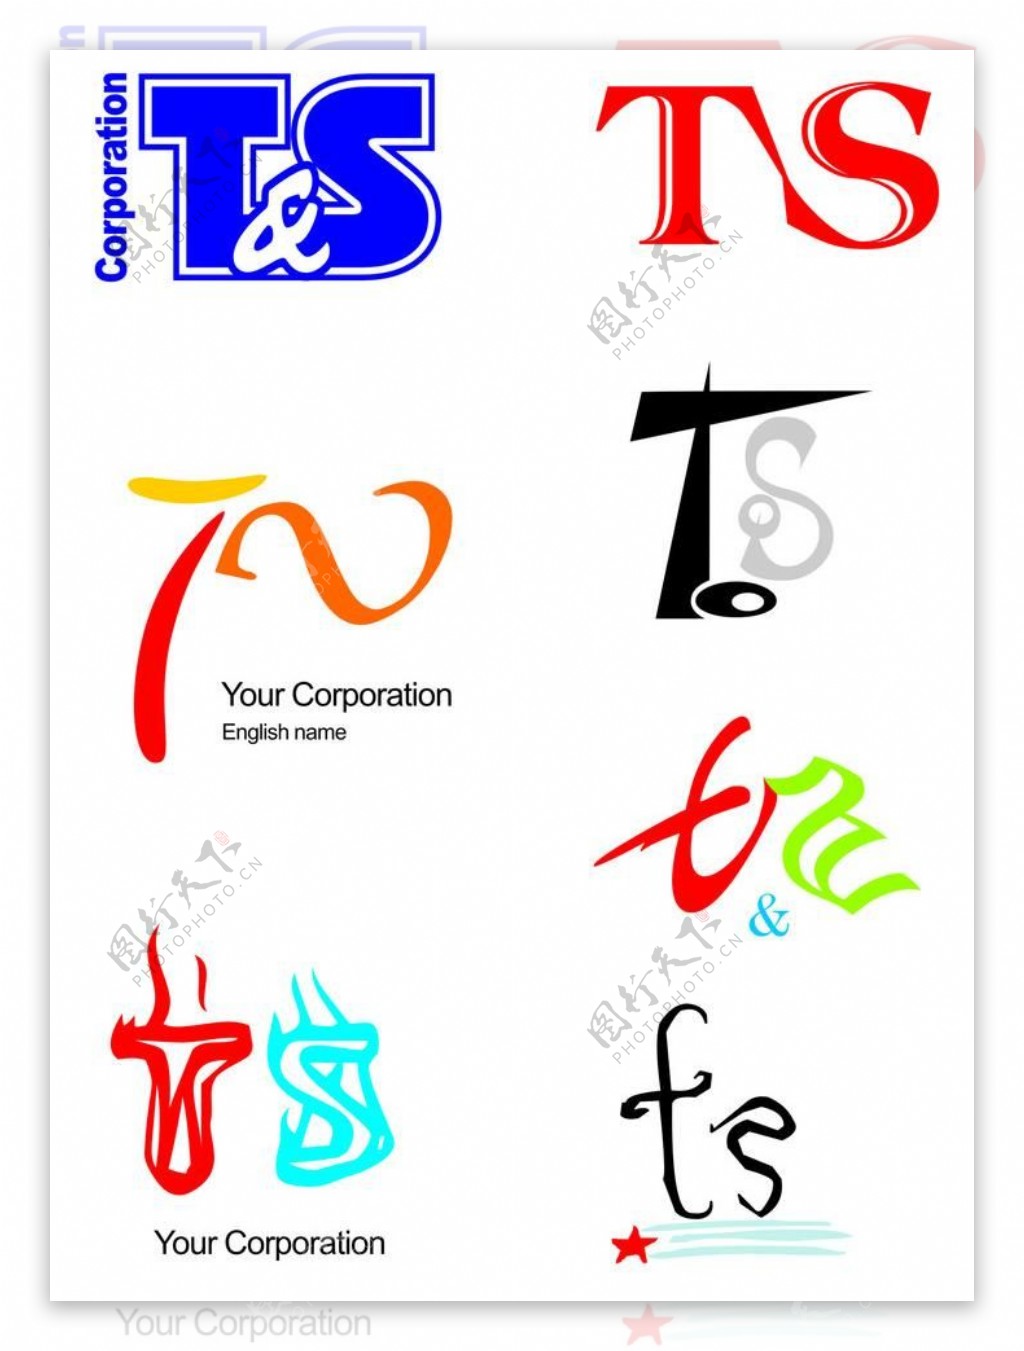 ts英文logo设计图片